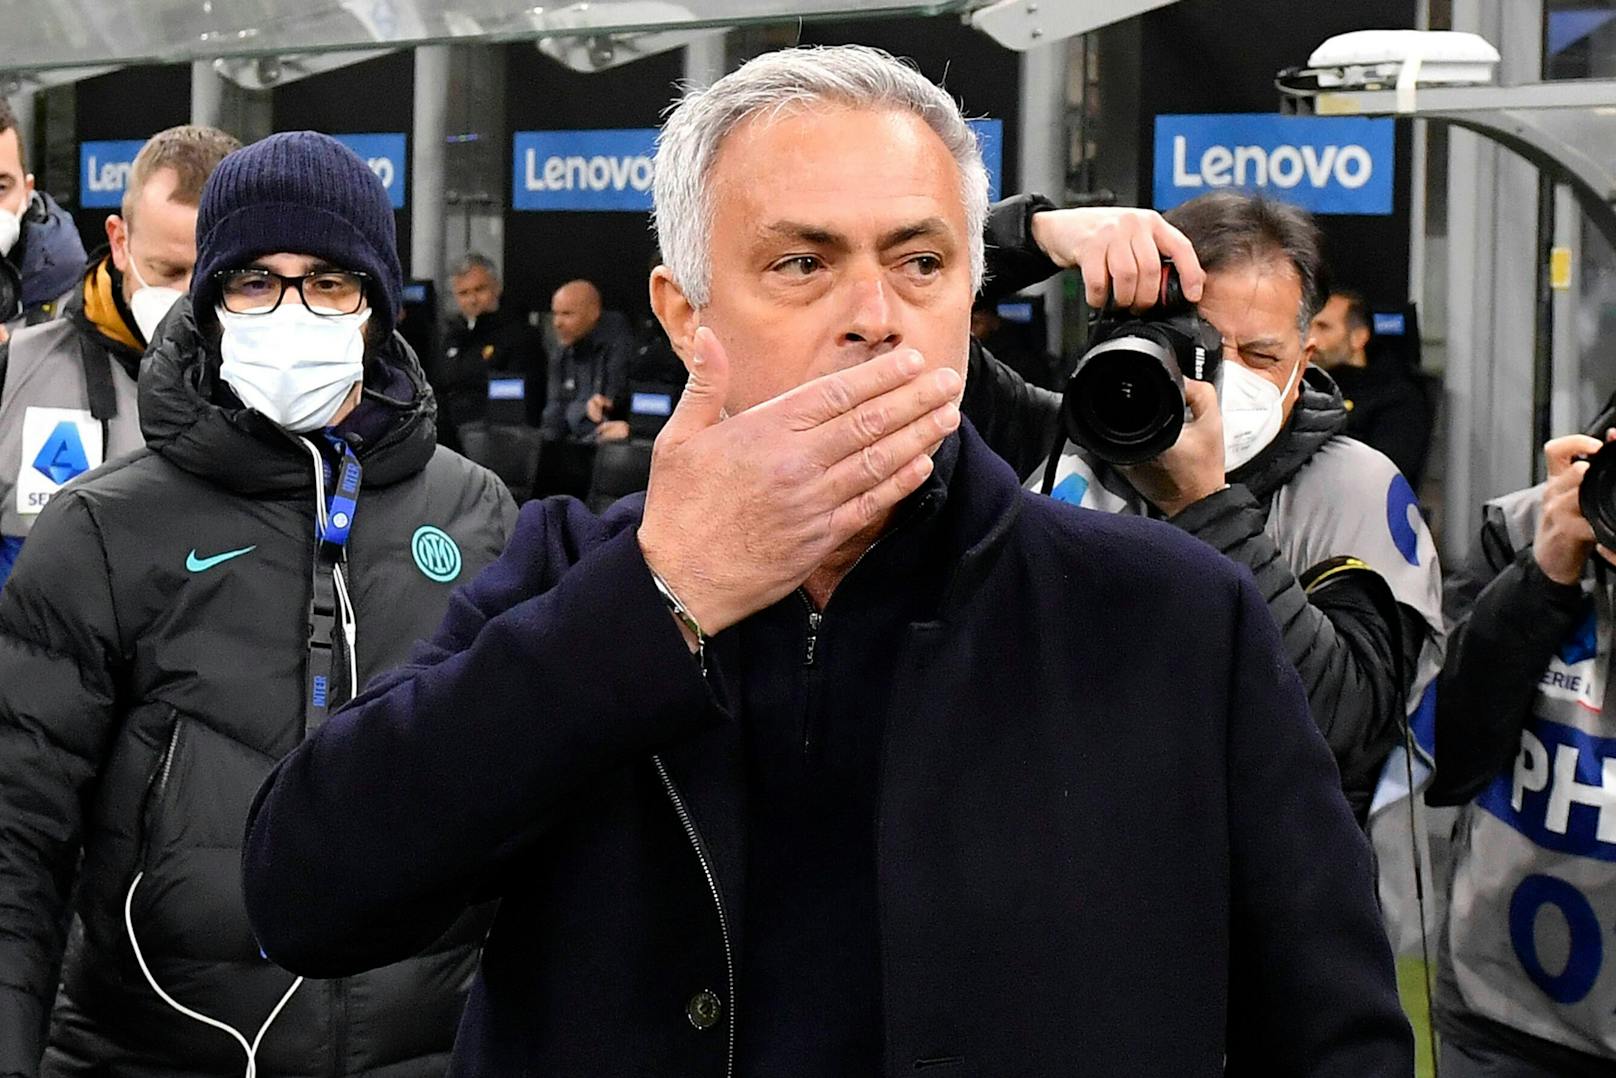 Mourinho von Spieler genervt: "Leider, er bleibt"